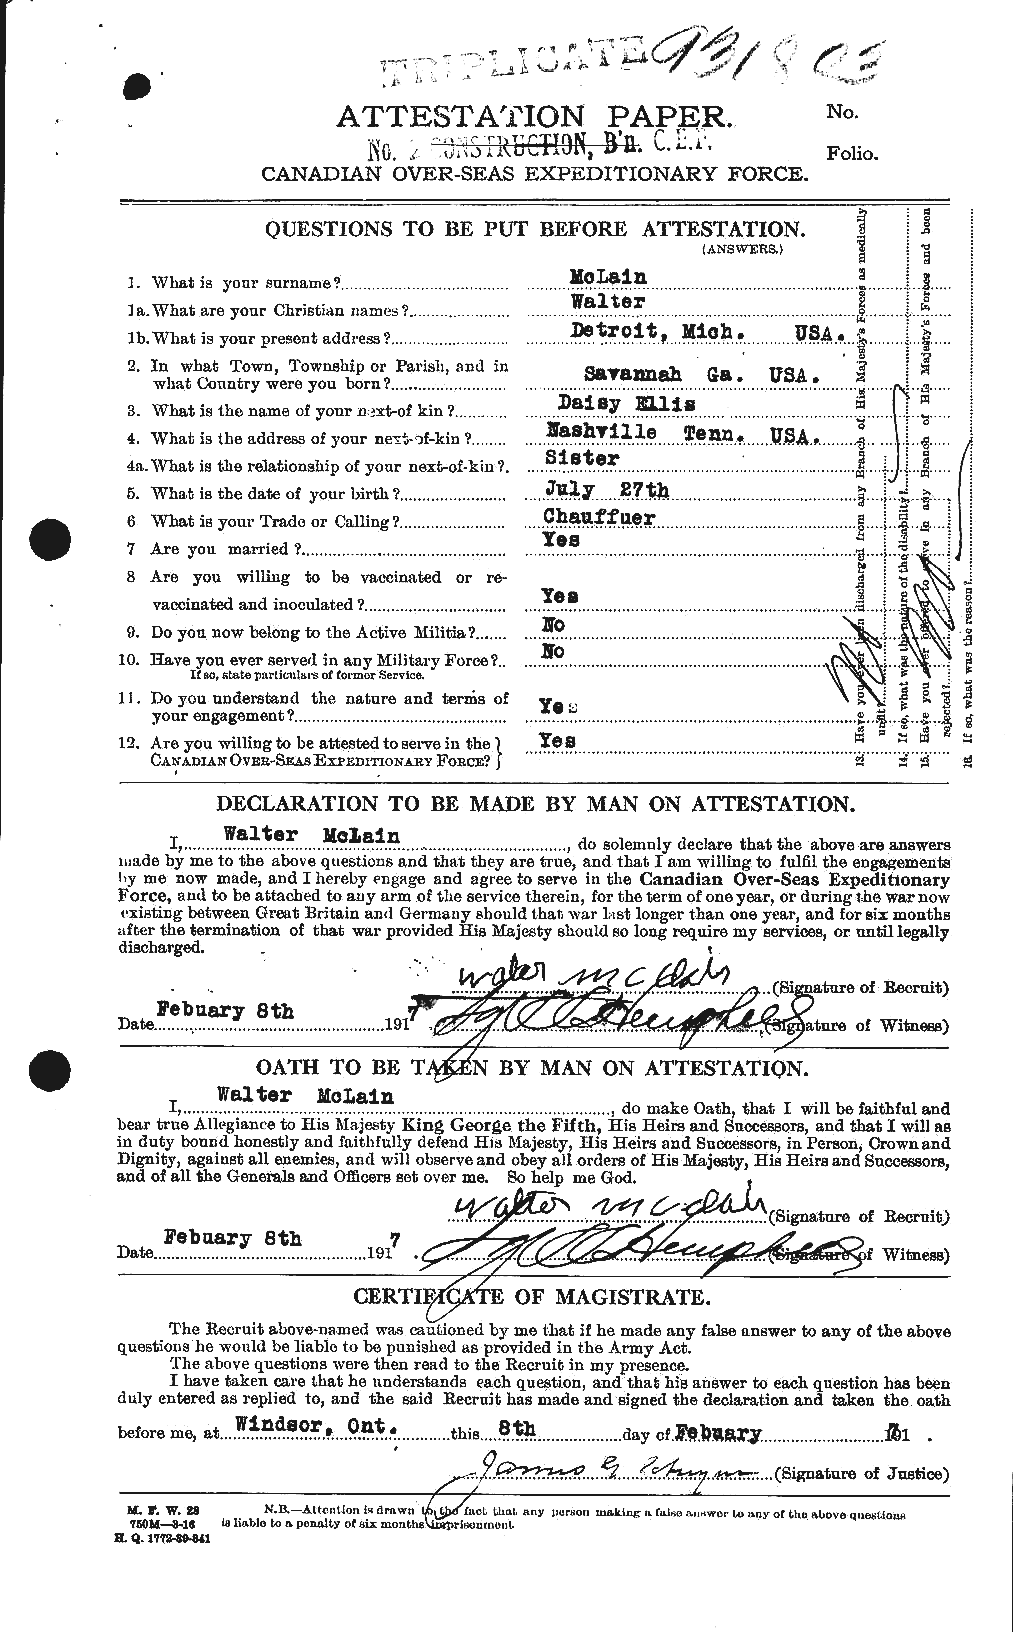 Dossiers du Personnel de la Première Guerre mondiale - CEC 533994a